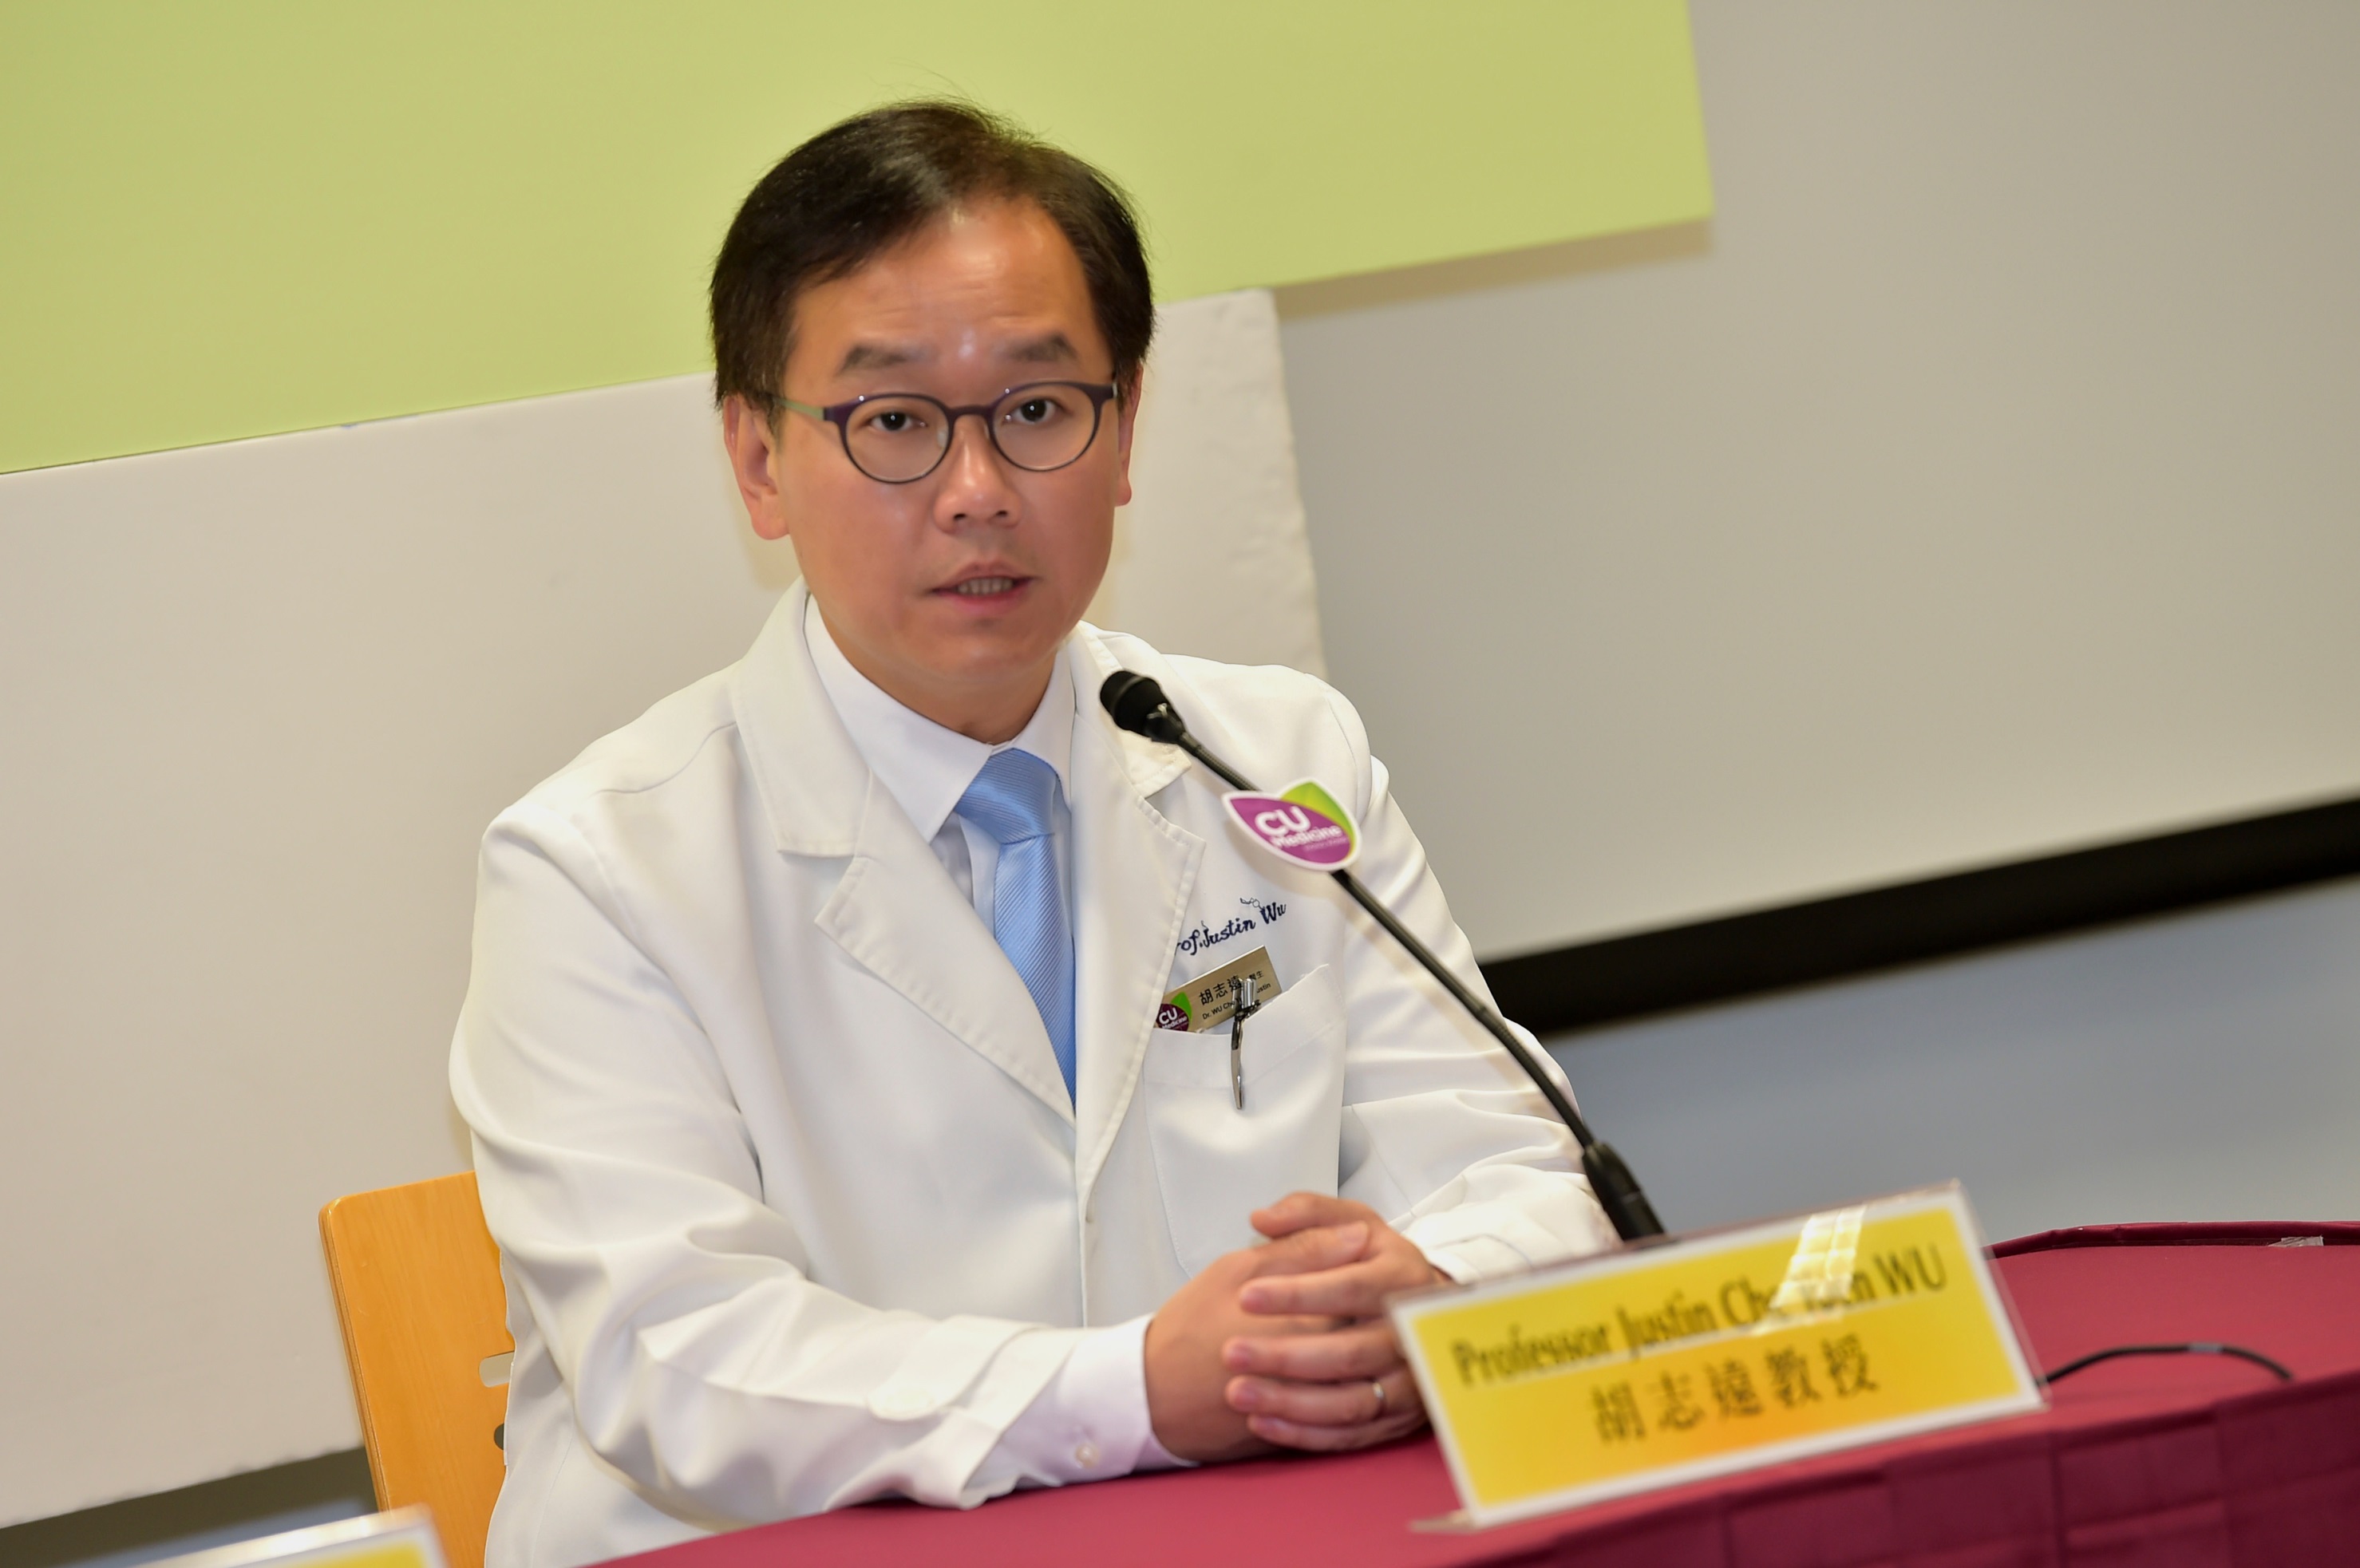 胡志远教授相信两个新平台将促进中西医护人员间的交流，将中医知识「国际化」和「普及化」。